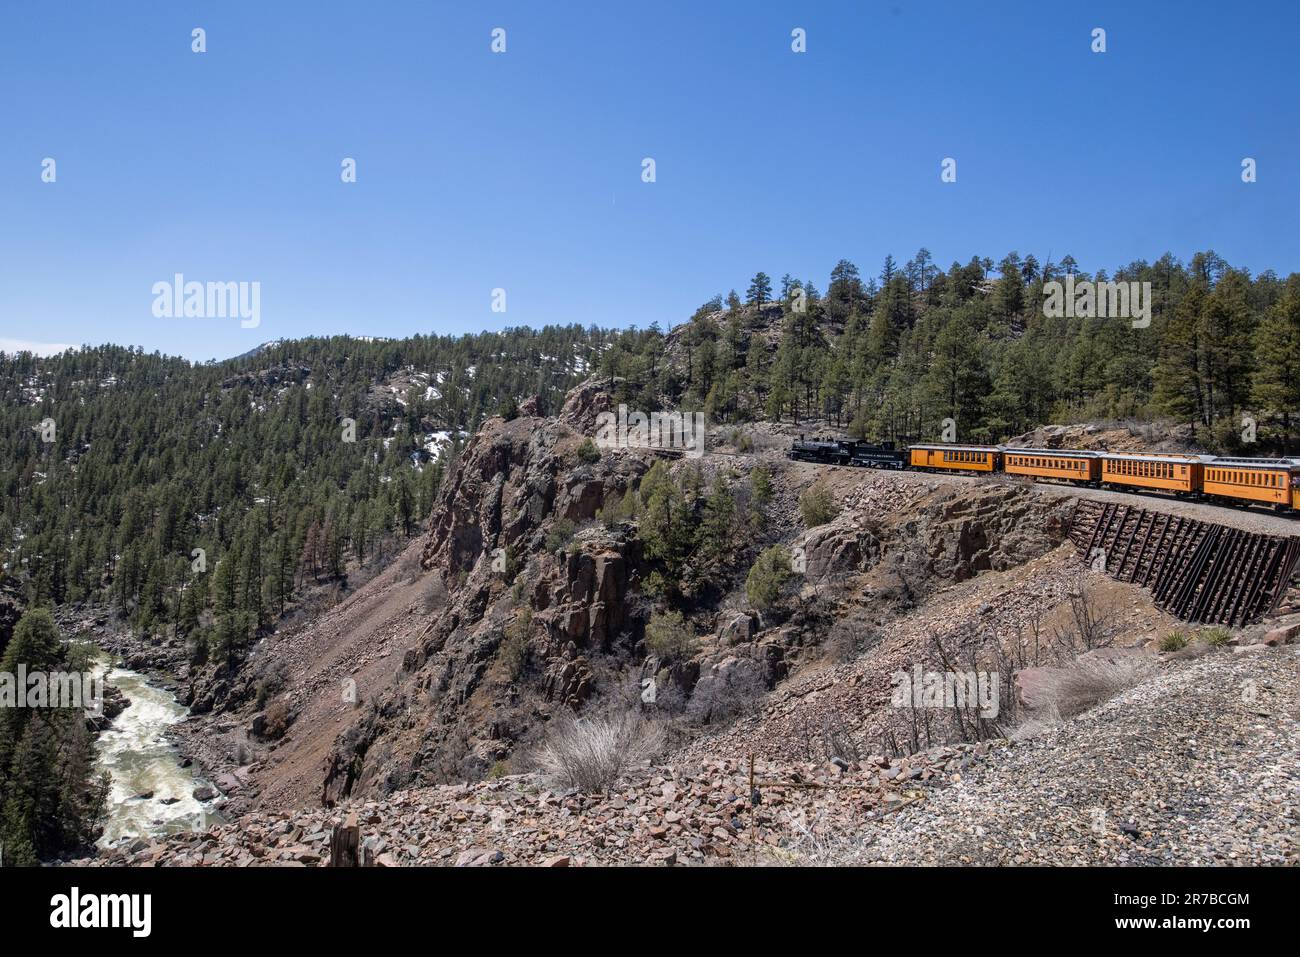 Chemin de fer à voie étroite Durango & Silverton transportant des passagers à travers le paysage montagneux de la forêt nationale de San Juan, au Colorado. Banque D'Images